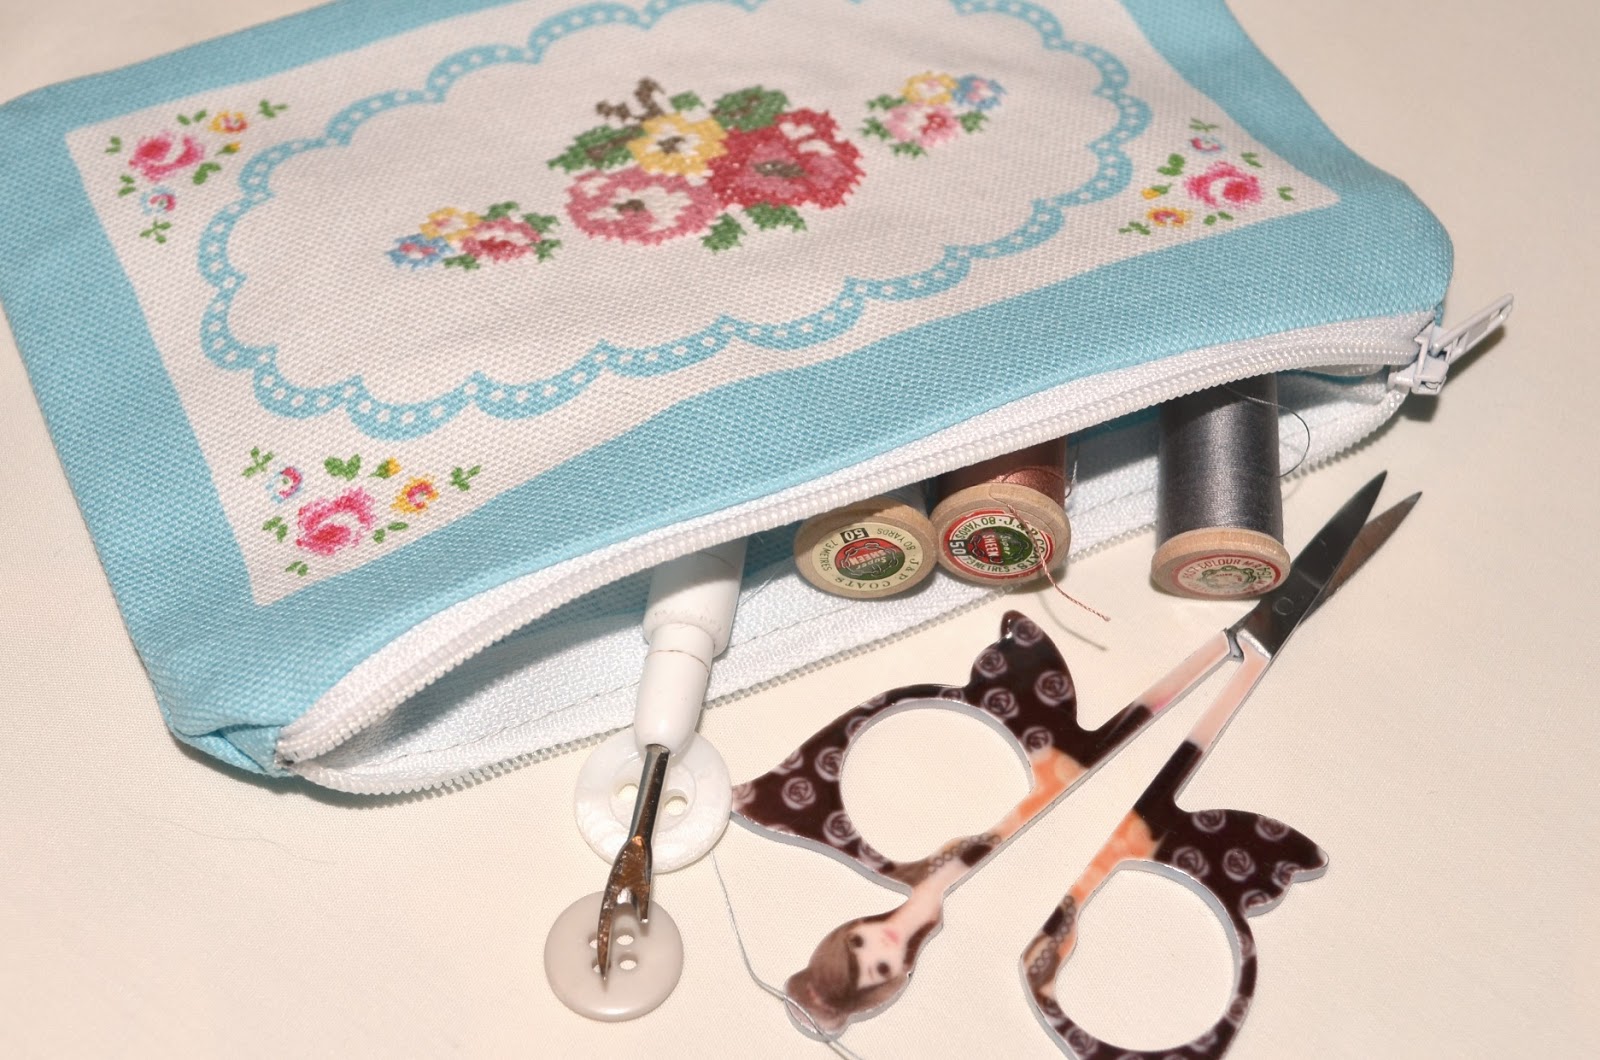 cath kidston sewing kit